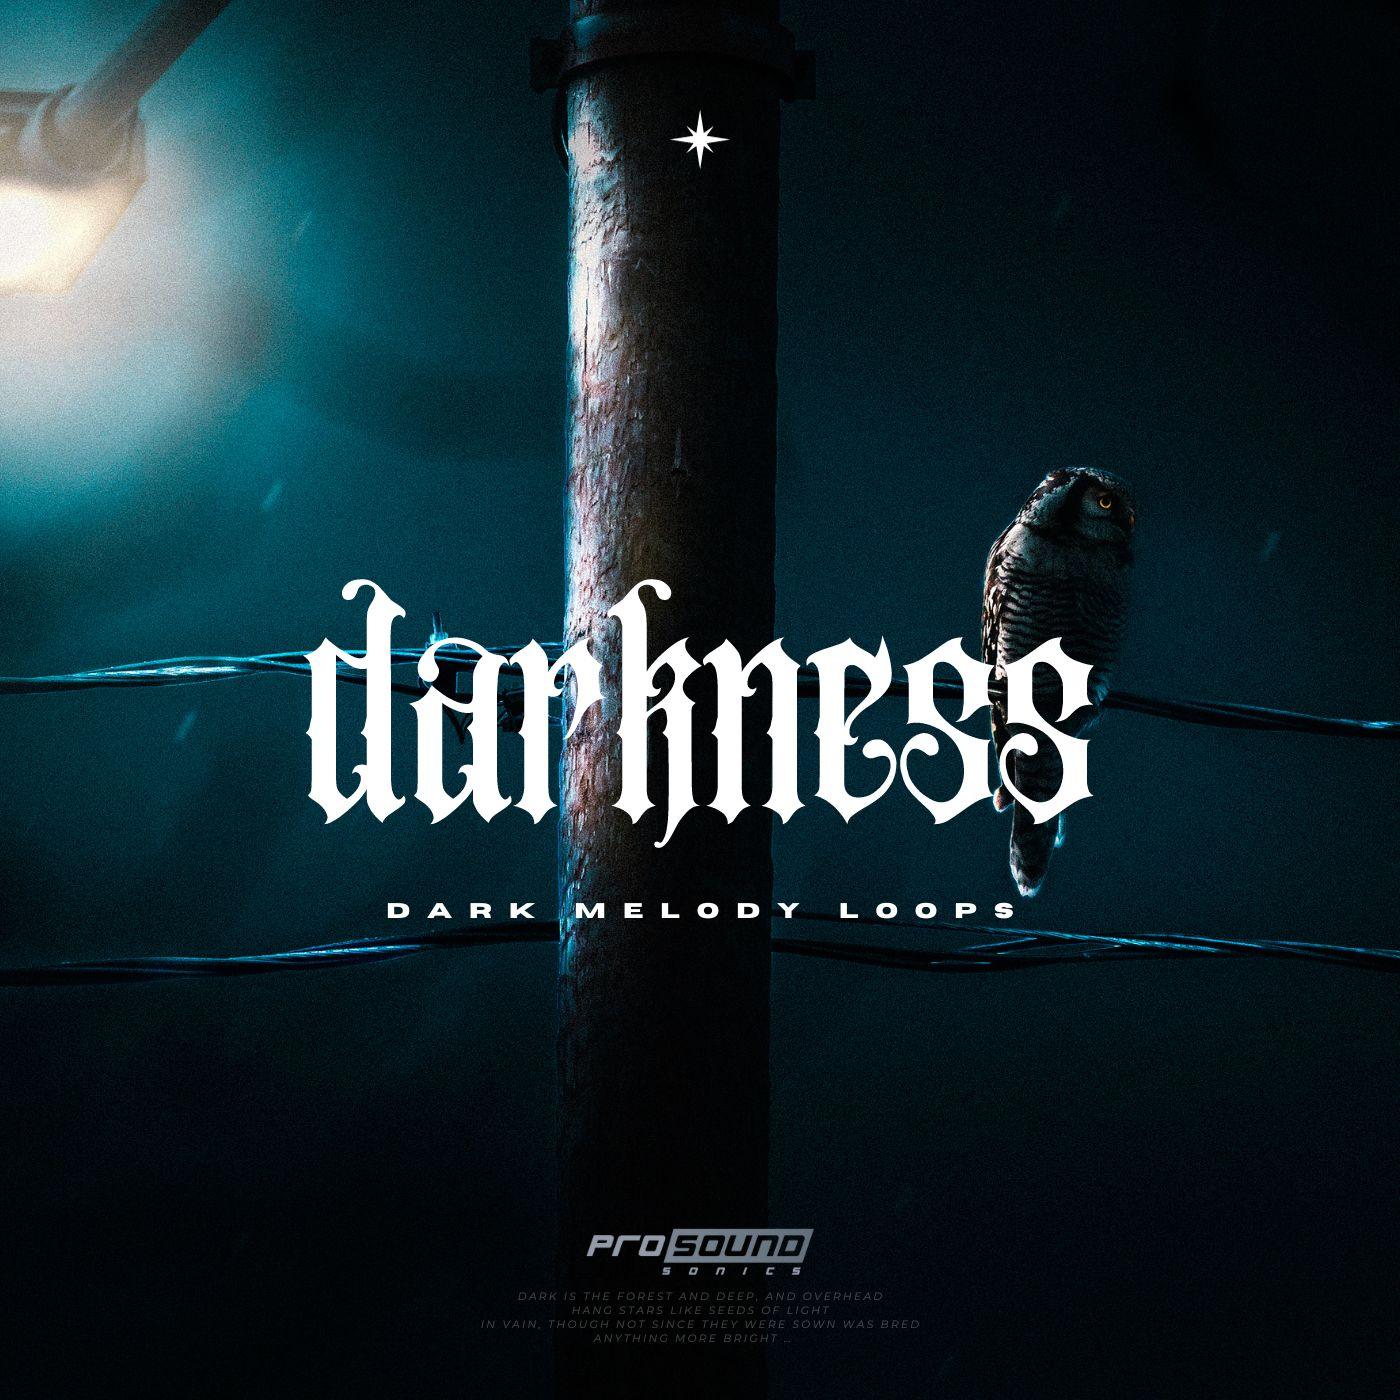 'Darkness' Dark Melody Loops - Prosound Sonics